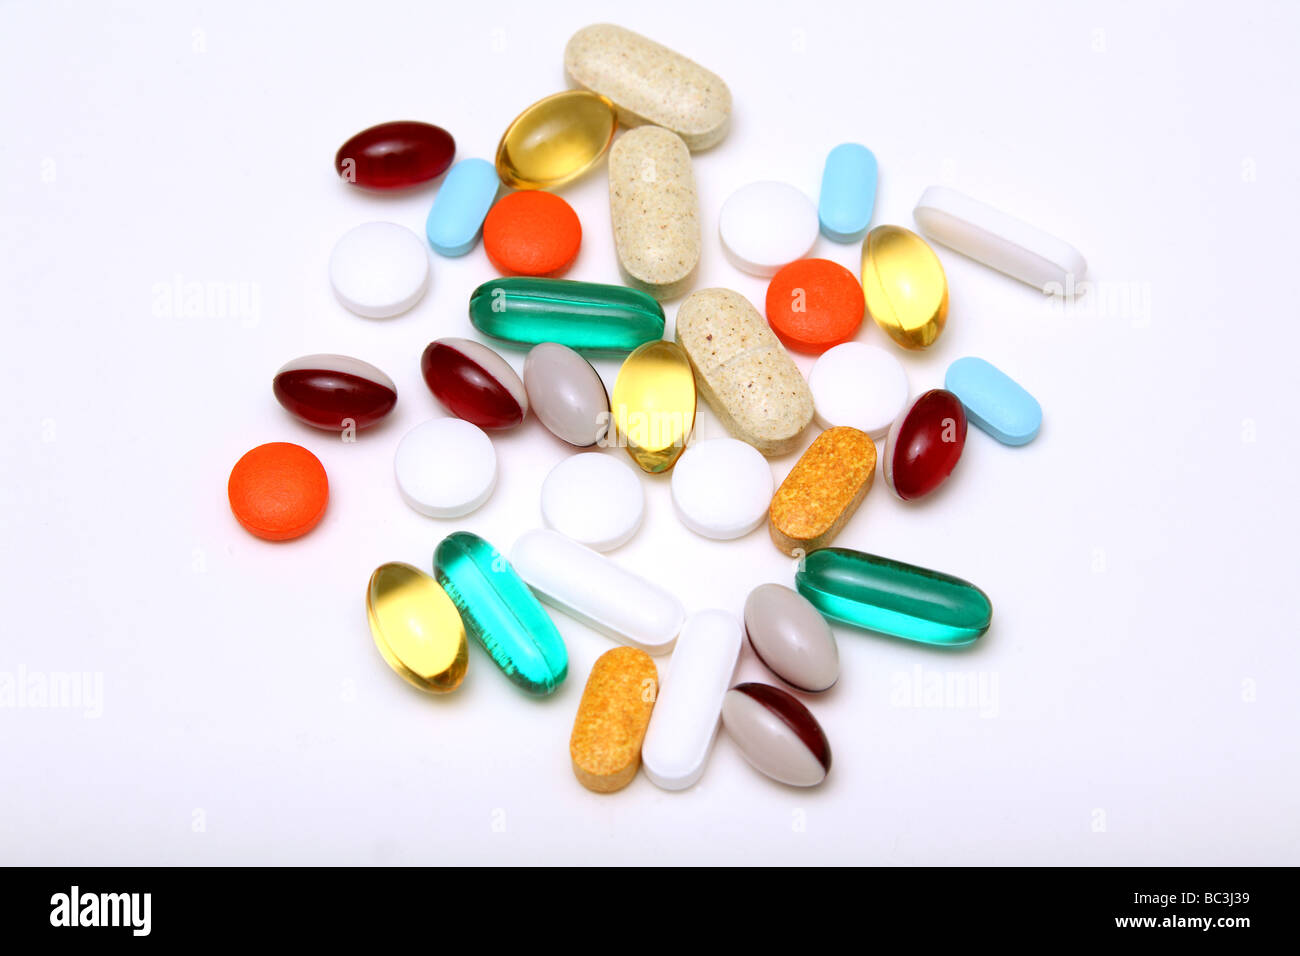 La medicazione e la vitamina pillole compresse e capsule su sfondo neutro Foto Stock